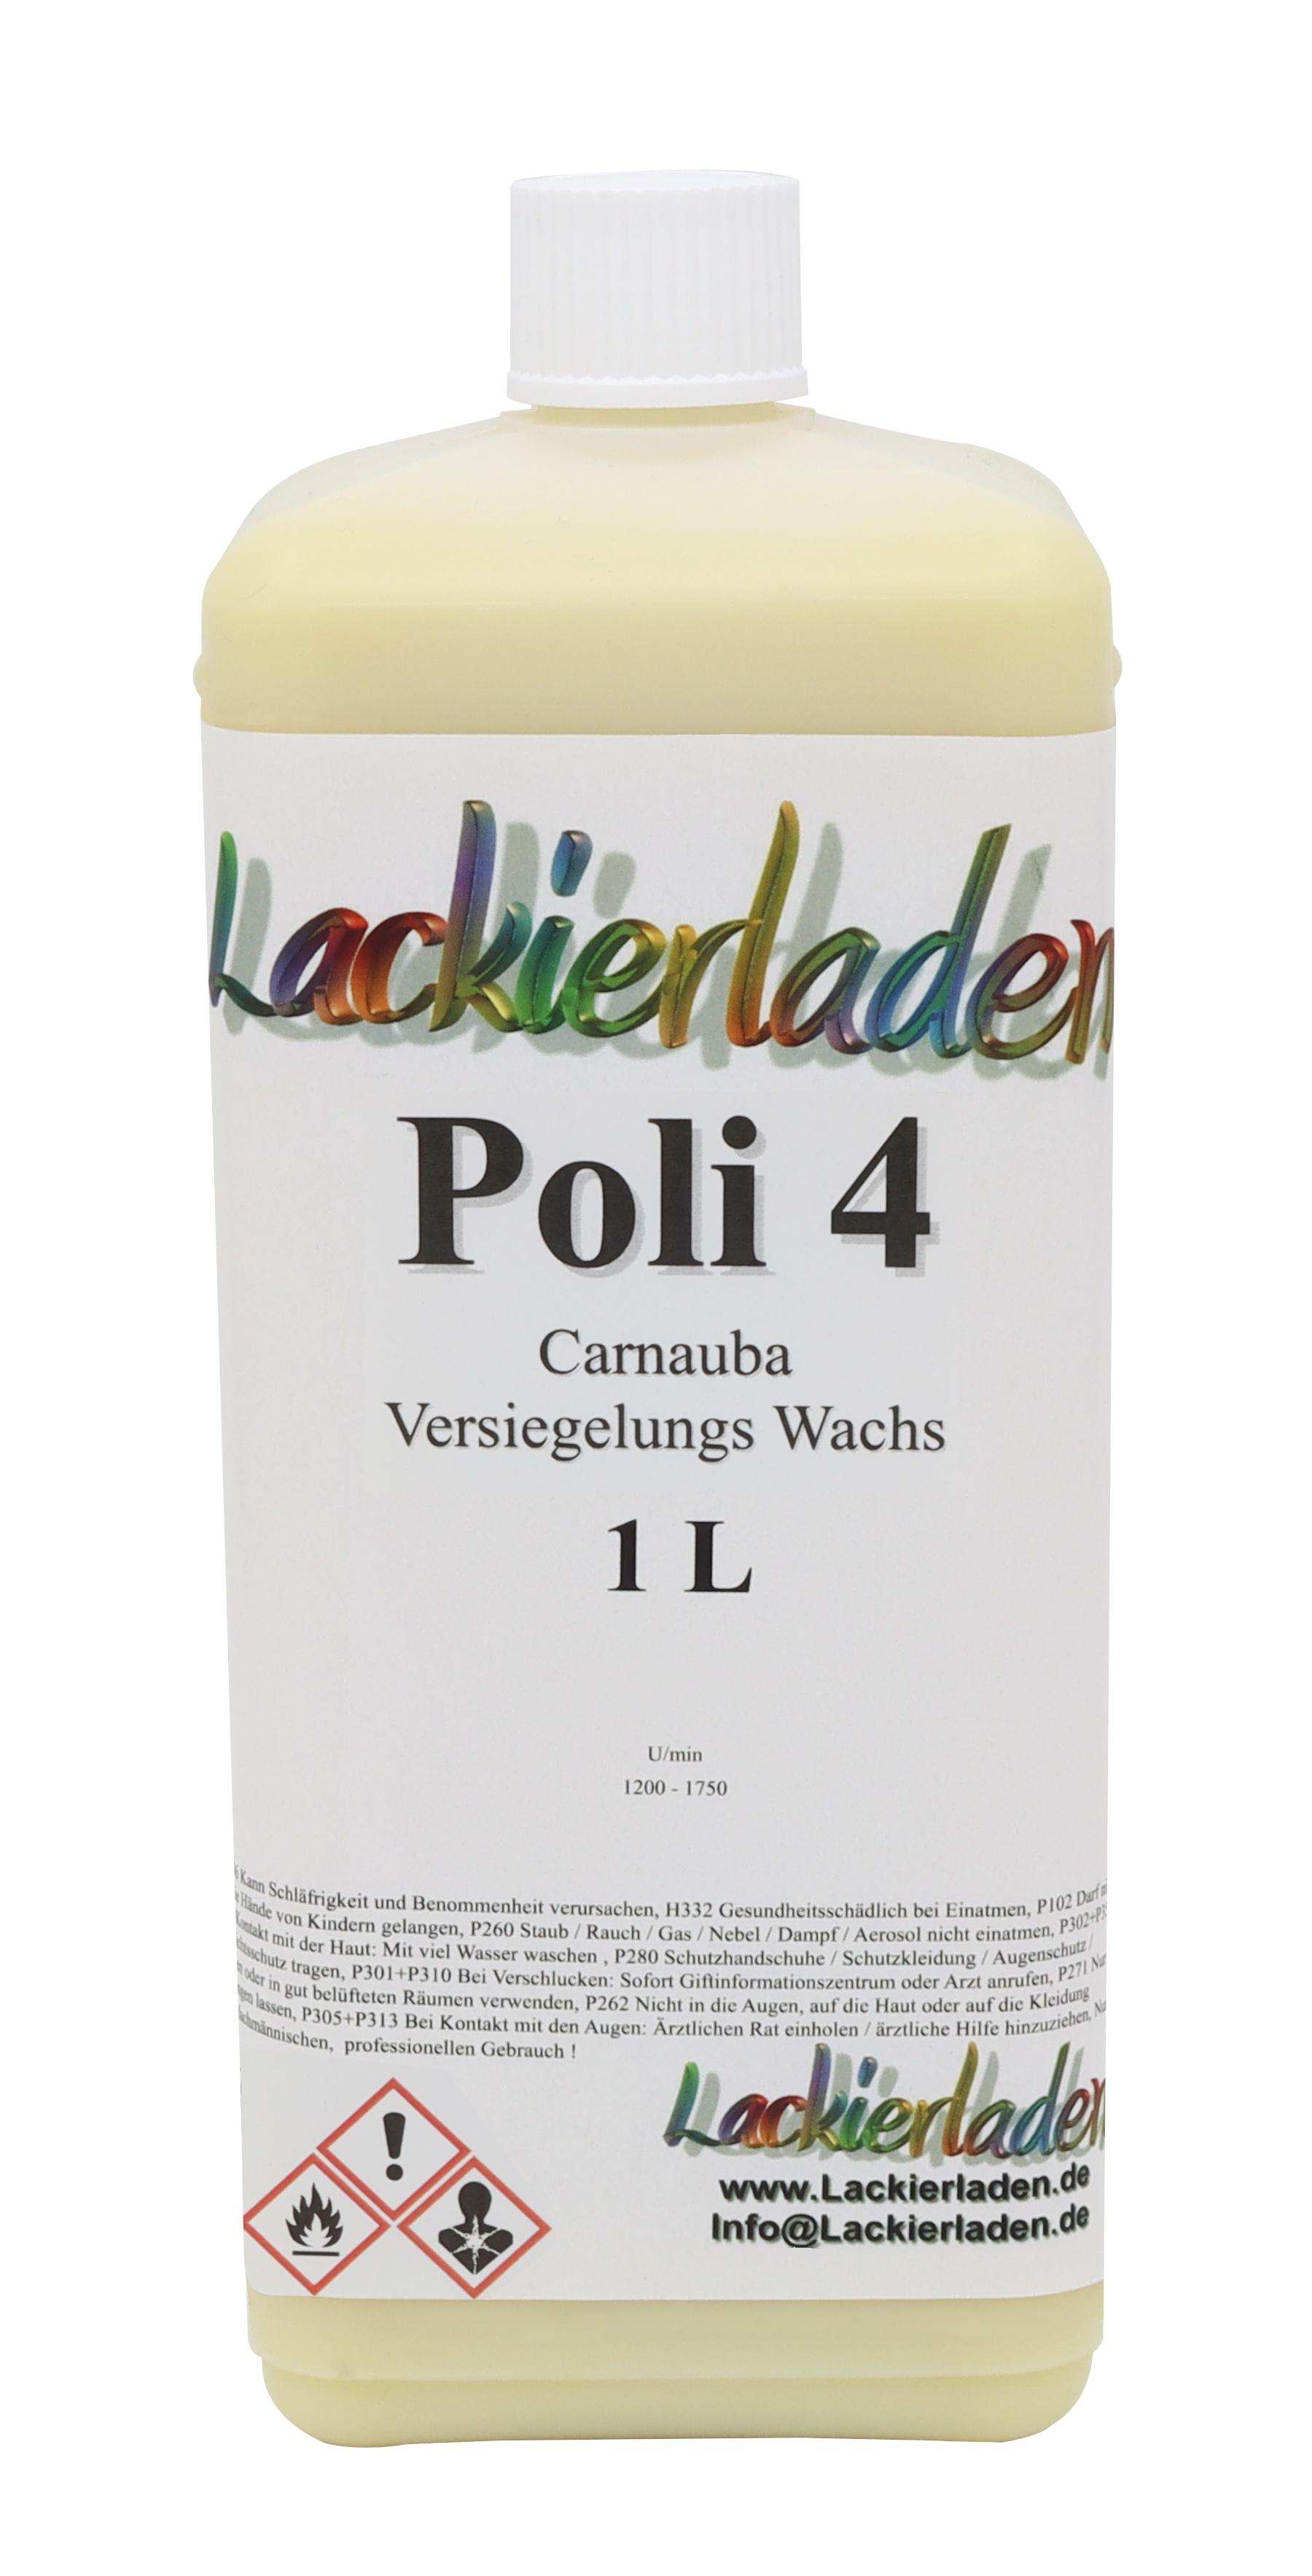 Poli 4 Versiegelungs Wachs (Carnauba Hard Wachs) 1,0 L | versiegeln Wax wachsen